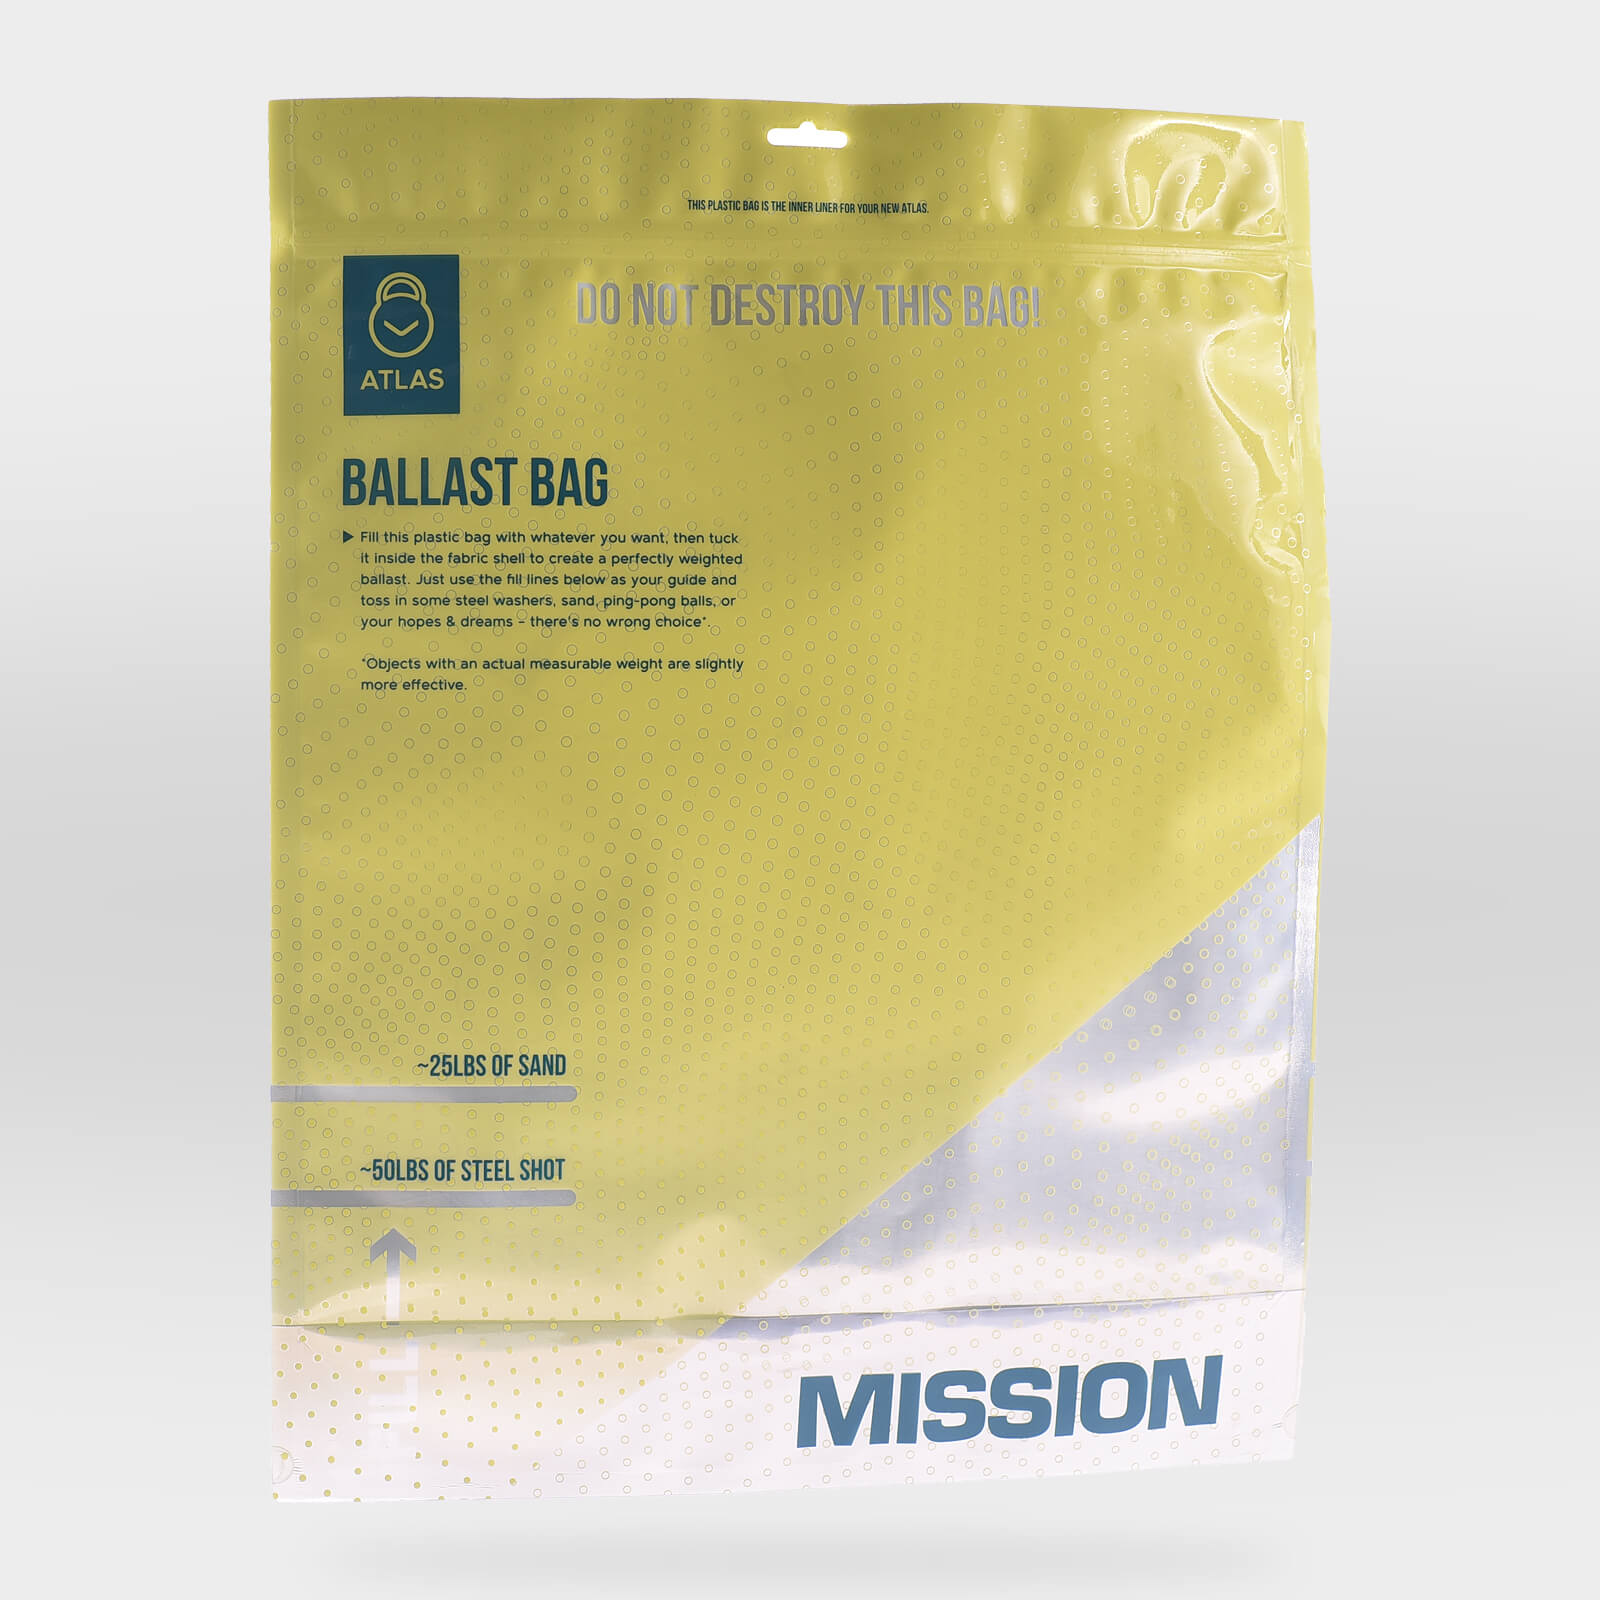 Packing for atlas ballast bag